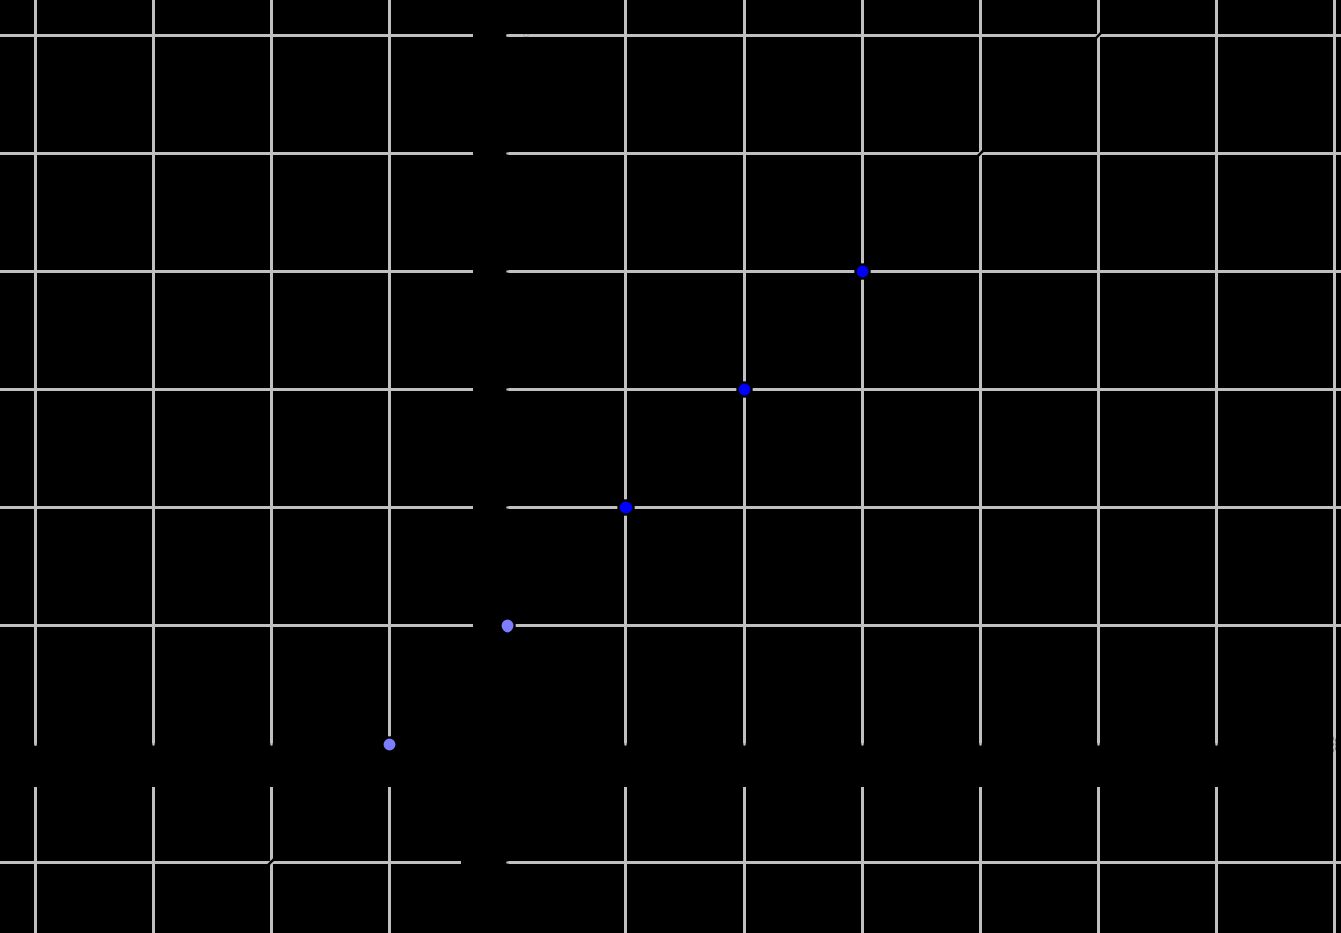 j) m = 3 5 ; A( 7; 5) k) m = 4 7 ; A(3; 1) l) m = 1 4 ; A( 3; 2) Tipp1: Két pont szükséges, először ábrázold A pontot, majd alkalmazd a meredekség jelentését.